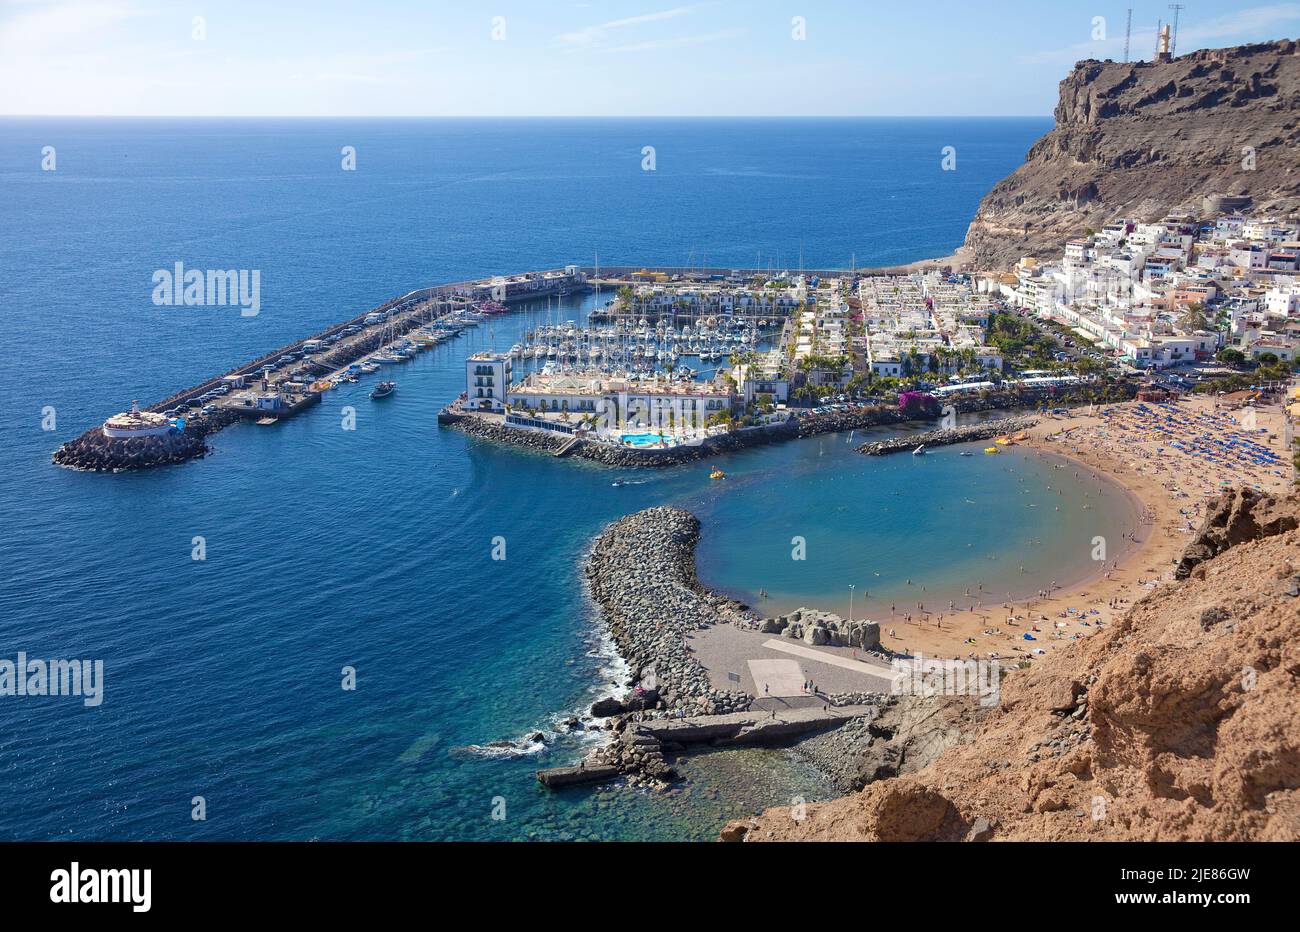 Vista general de Puerto de Mogan, Gran Canaria, Islas Canarias, España, Europa Foto de stock